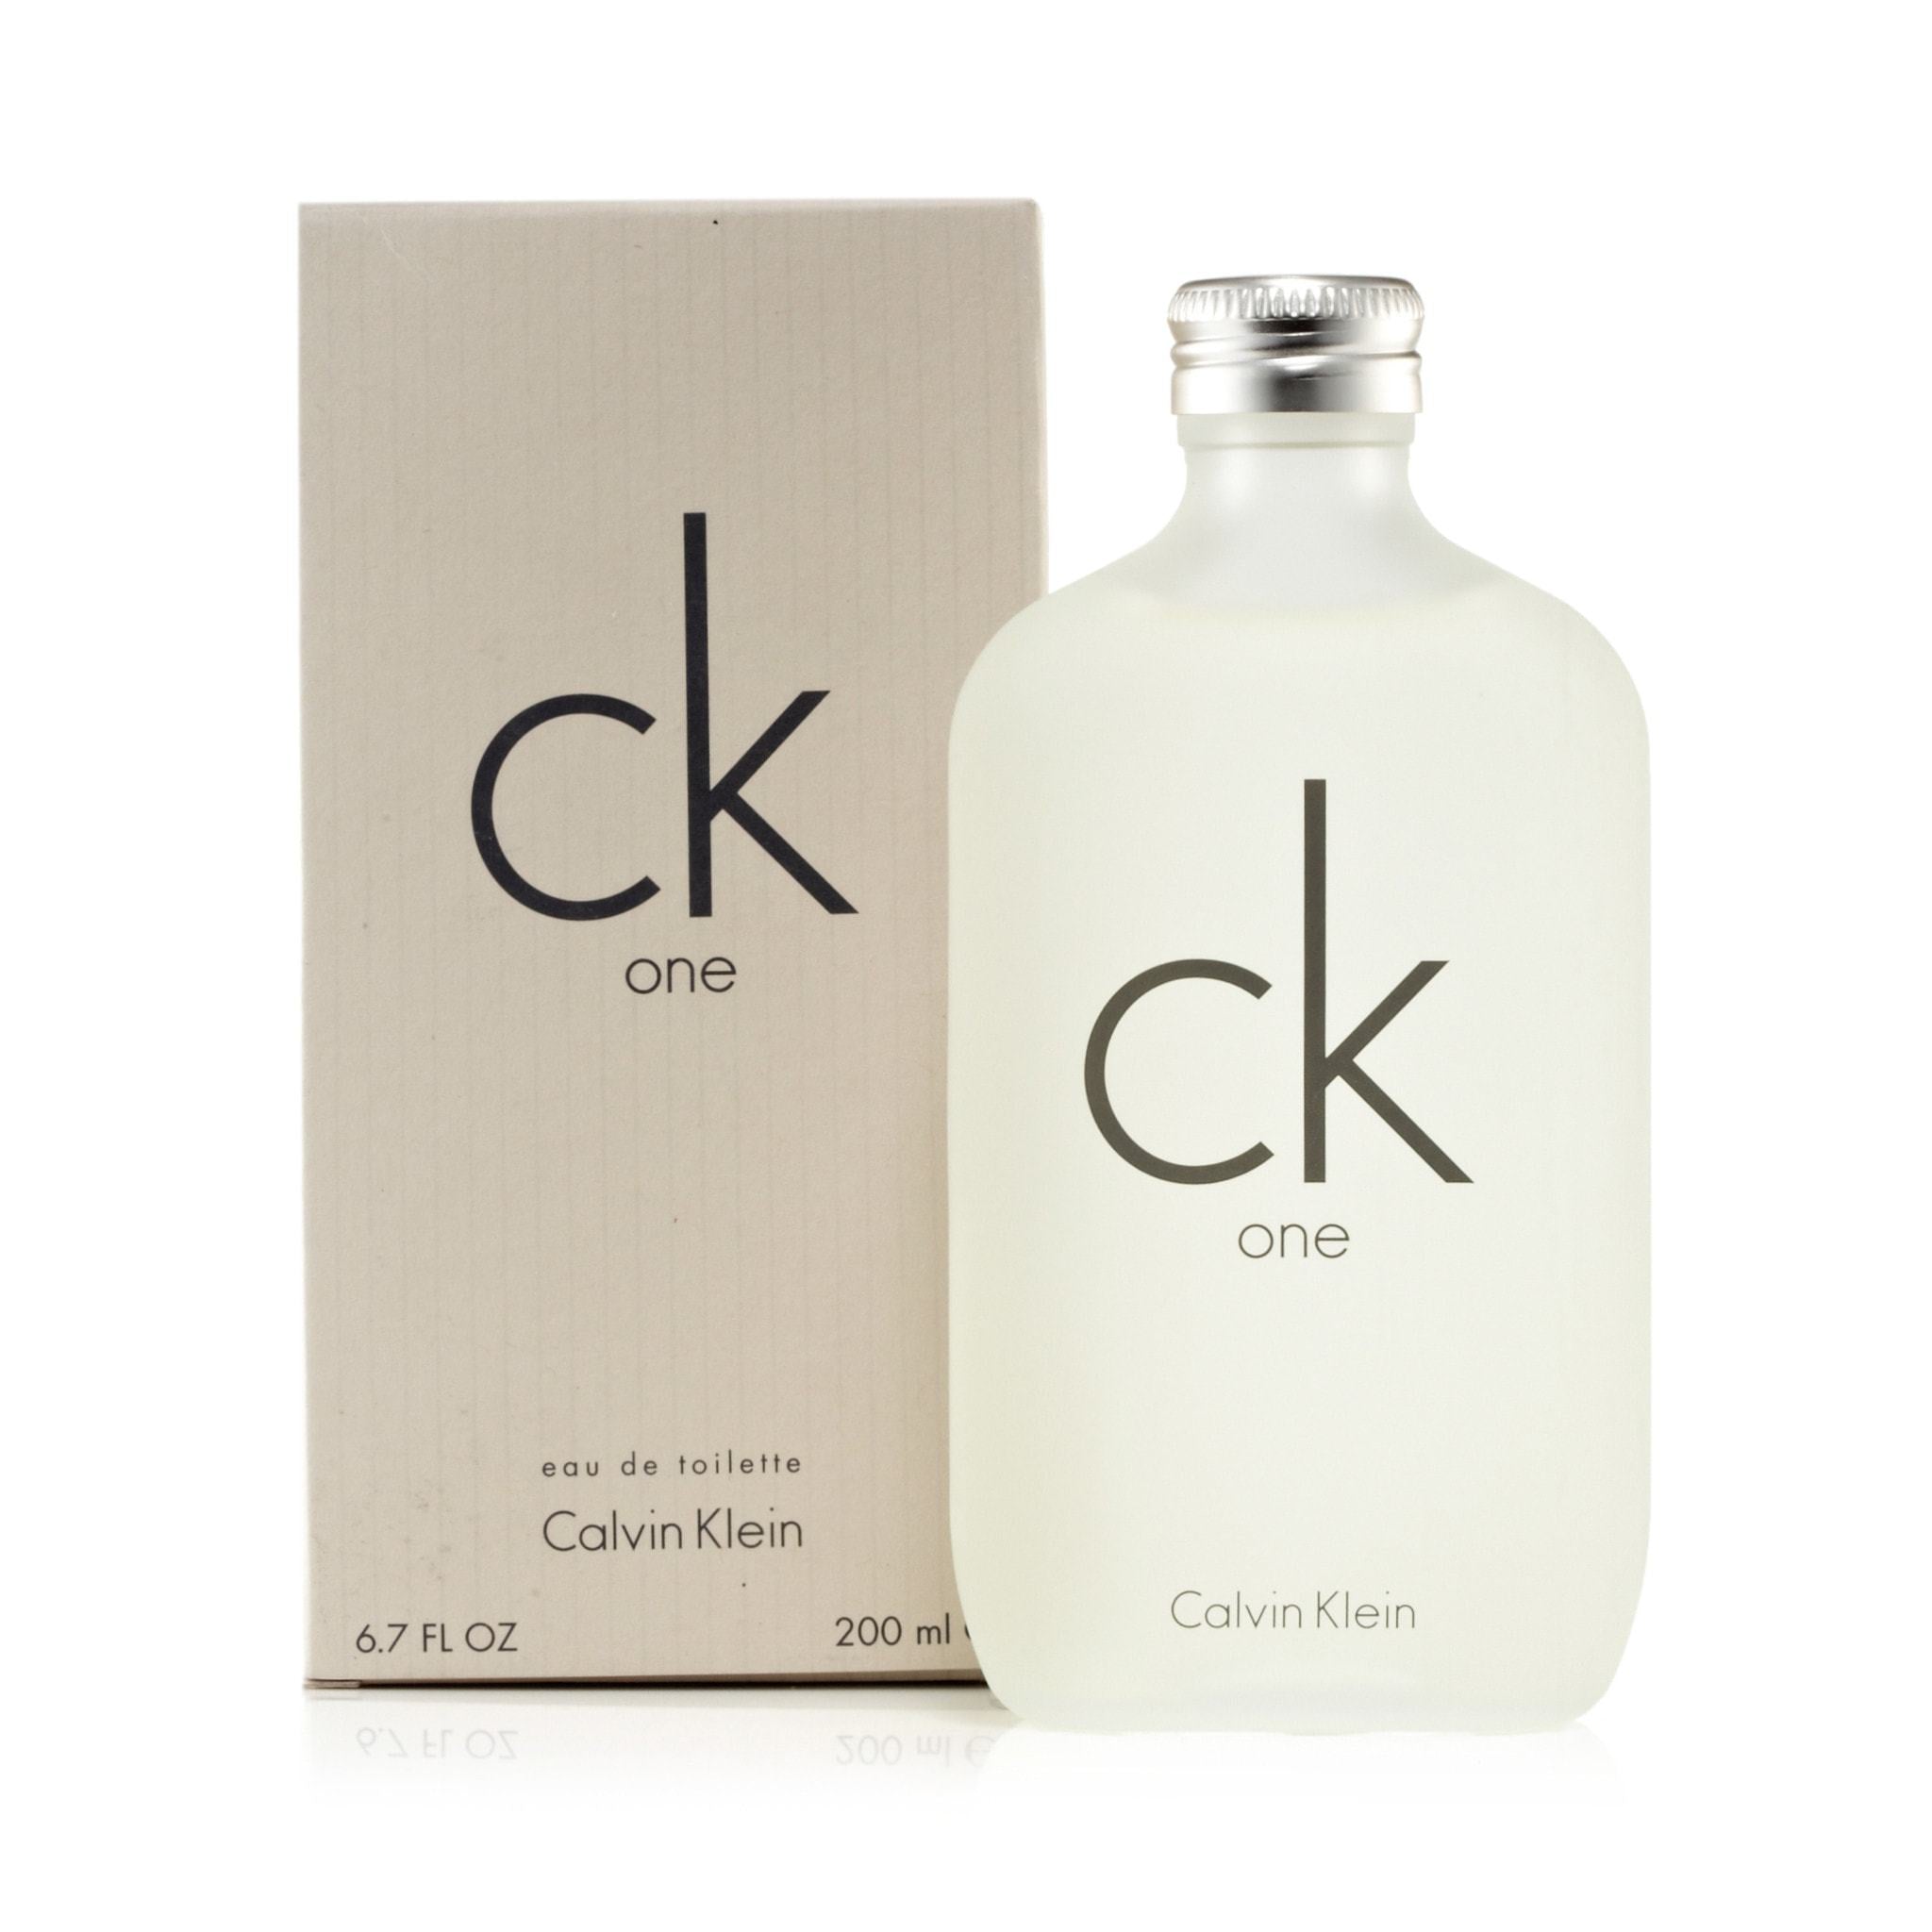 Valiente Gruñón Comprimir CK One For Women And Men By Calvin Klein Eau De Toilette Spray – Perfumania